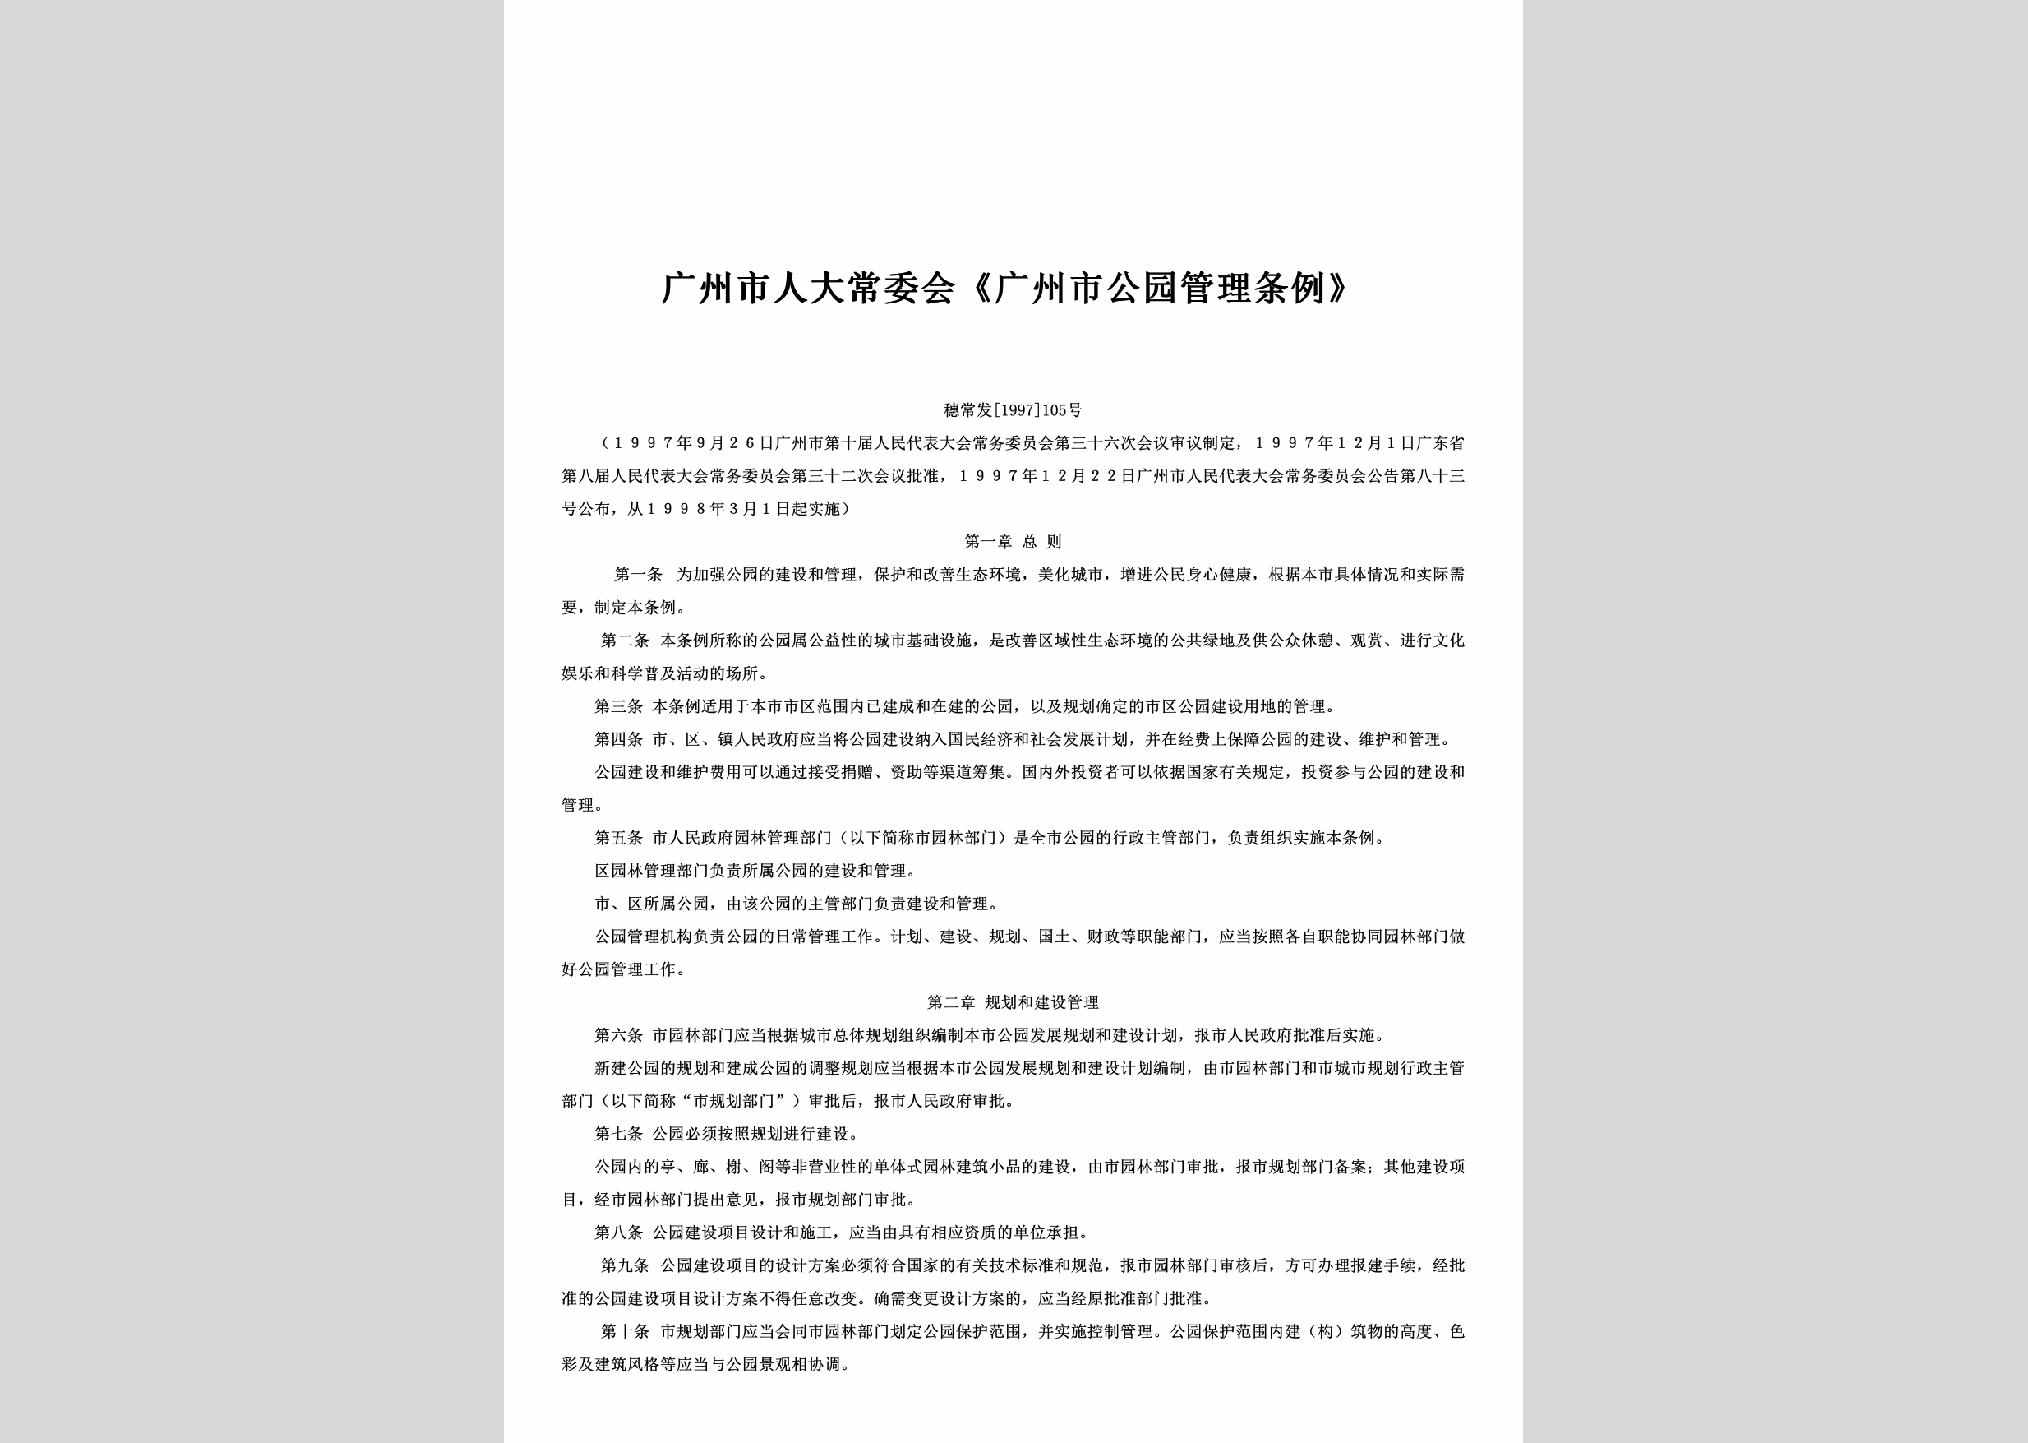 穗常发[1997]105号：广州市人大常委会《广州市公园管理条例》